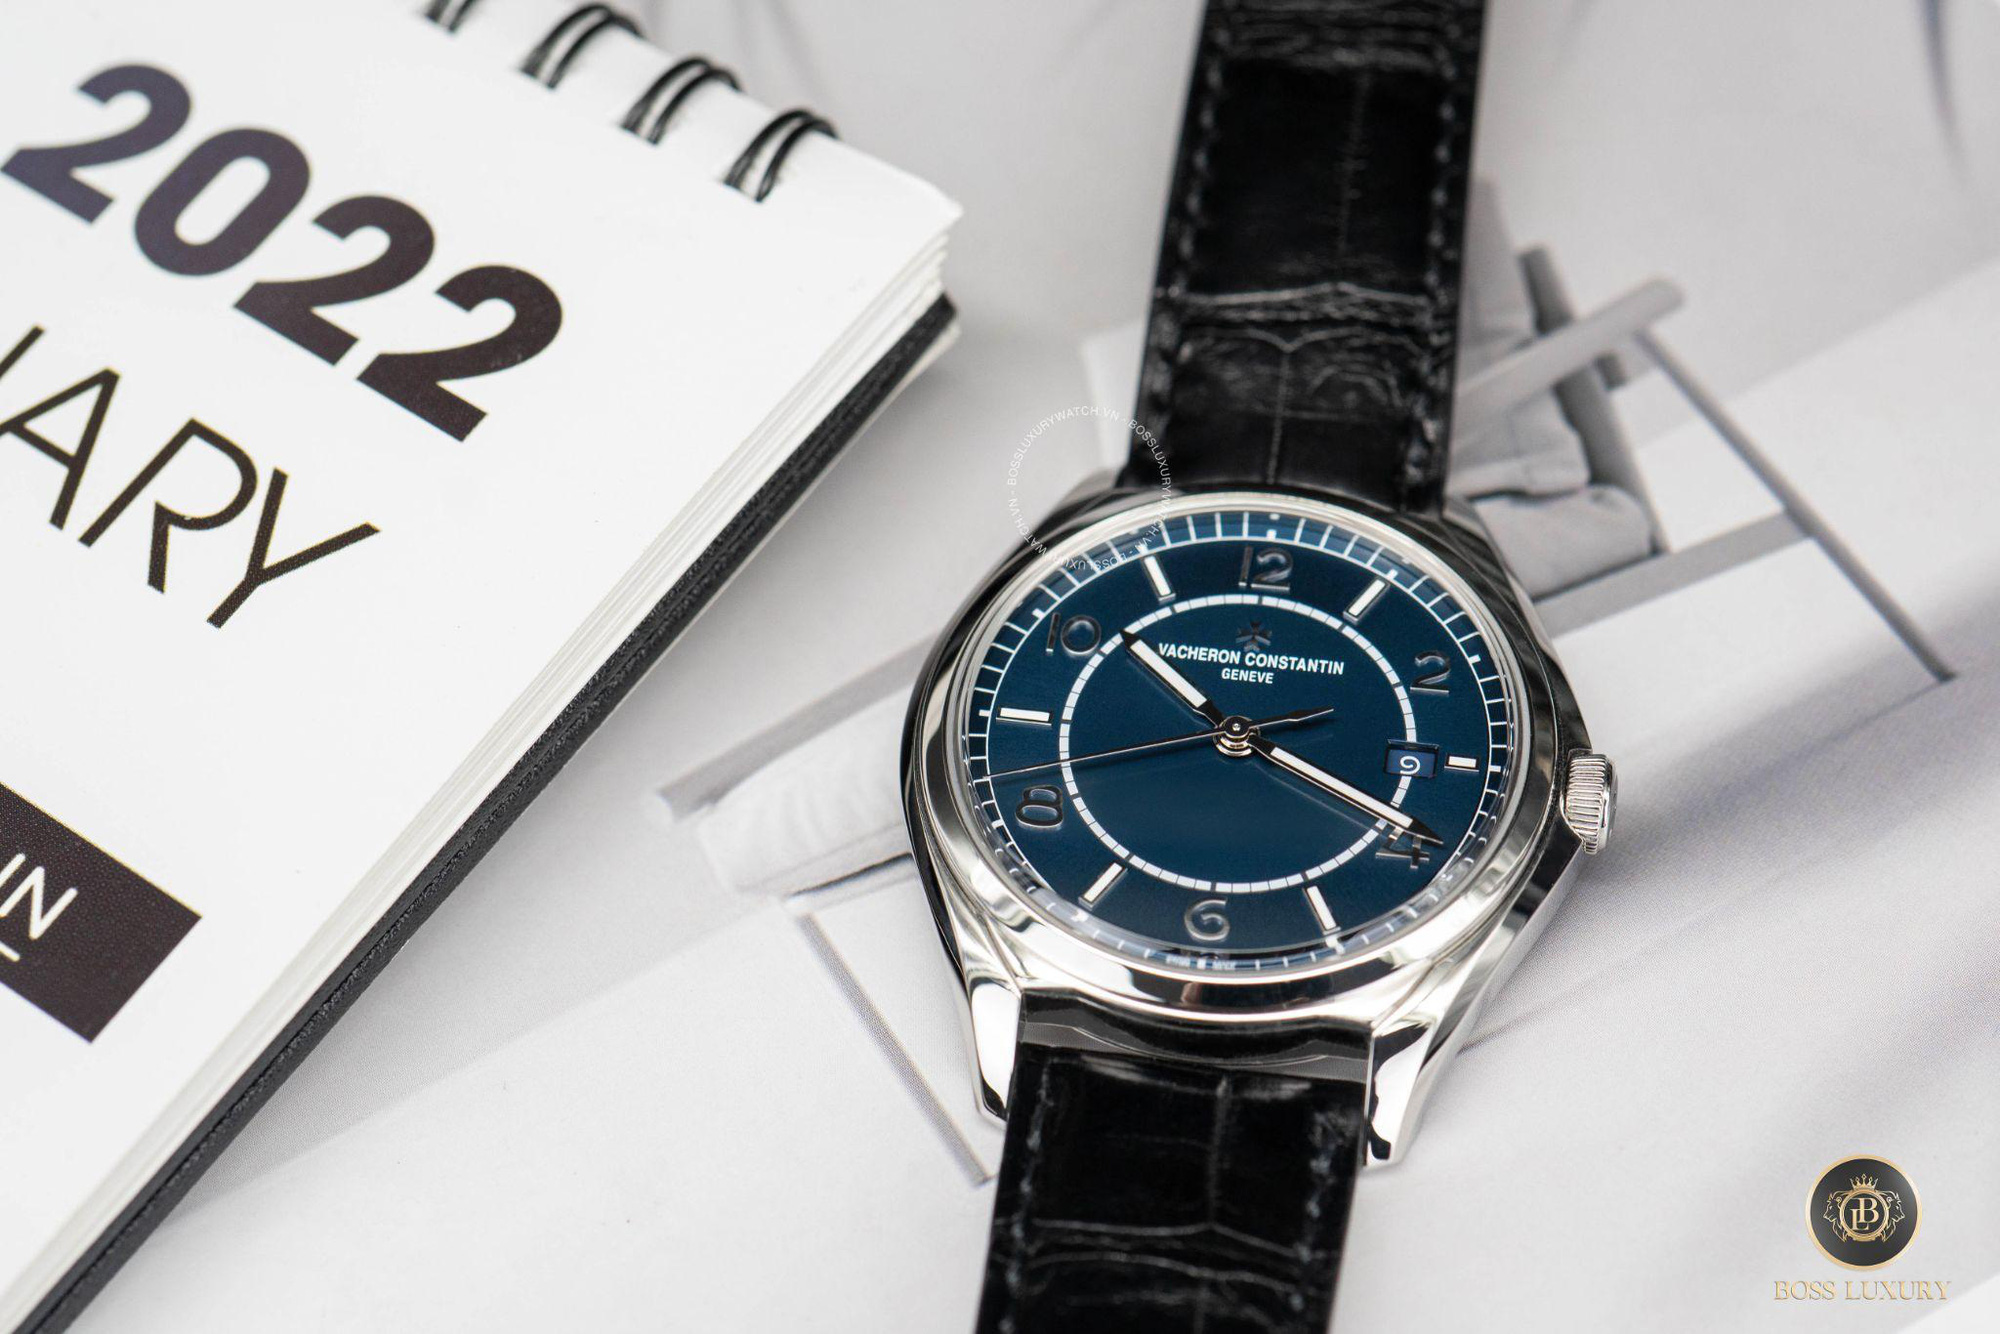 Boss Luxury tư vấn 5 mẫu đồng hồ mặt số màu xanh dành cho quý ông - Ảnh 5.